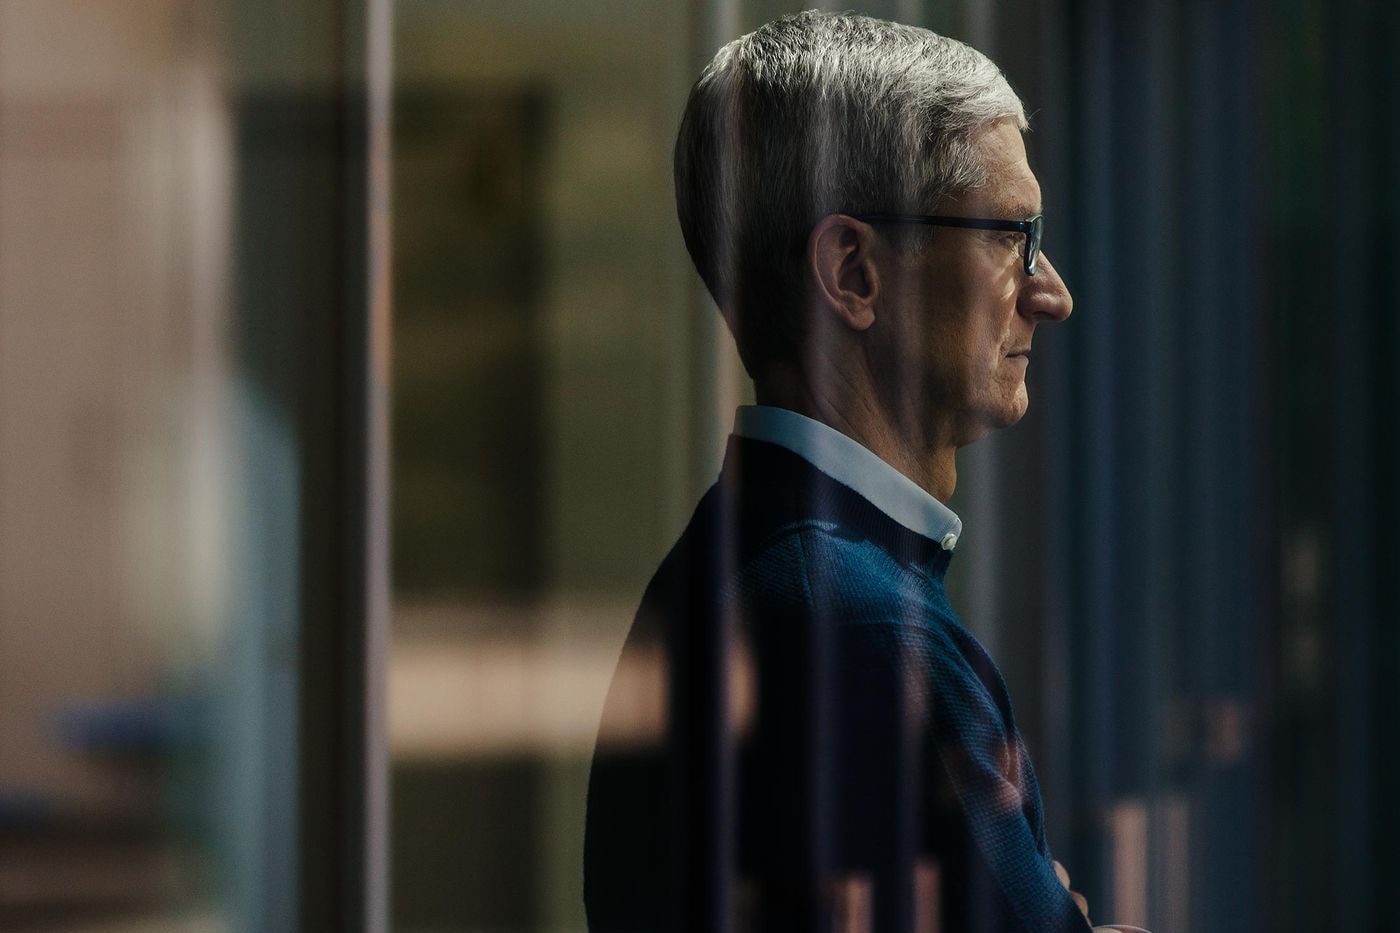 精神領袖 - Tim Cook 視 Steve Jobs 為蘋果「憲法」去管理及創作